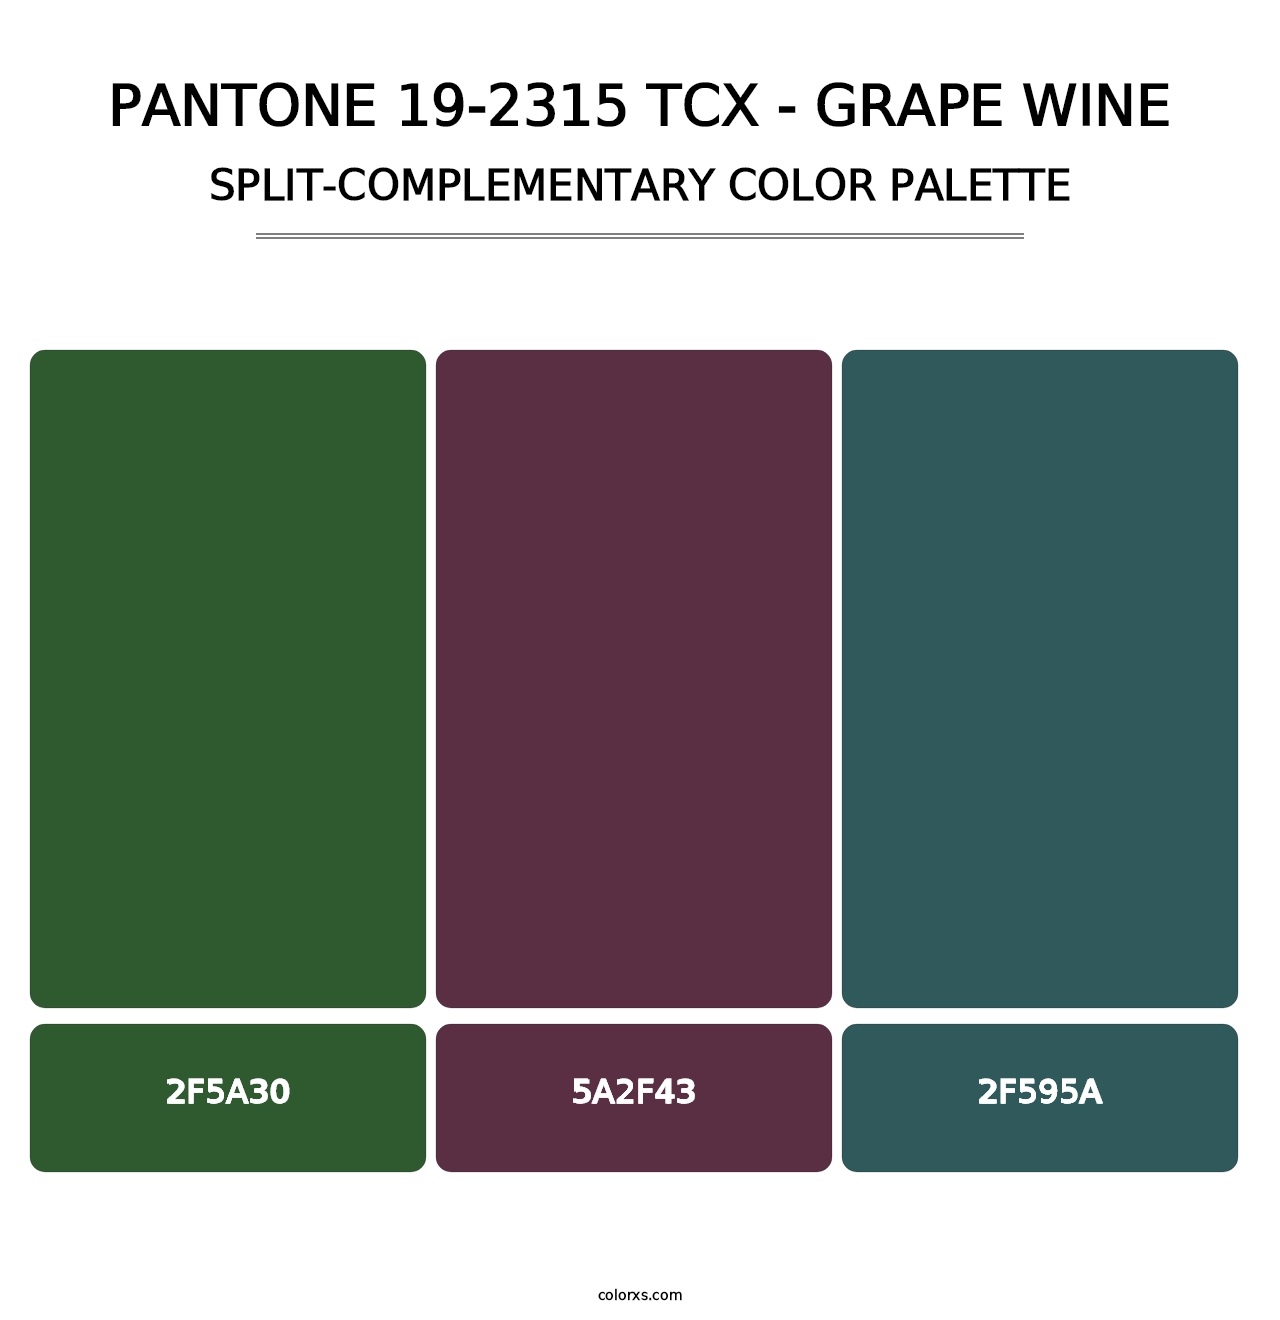 PANTONE 19-2315 TCX - Grape Wine - Split-Complementary Color Palette